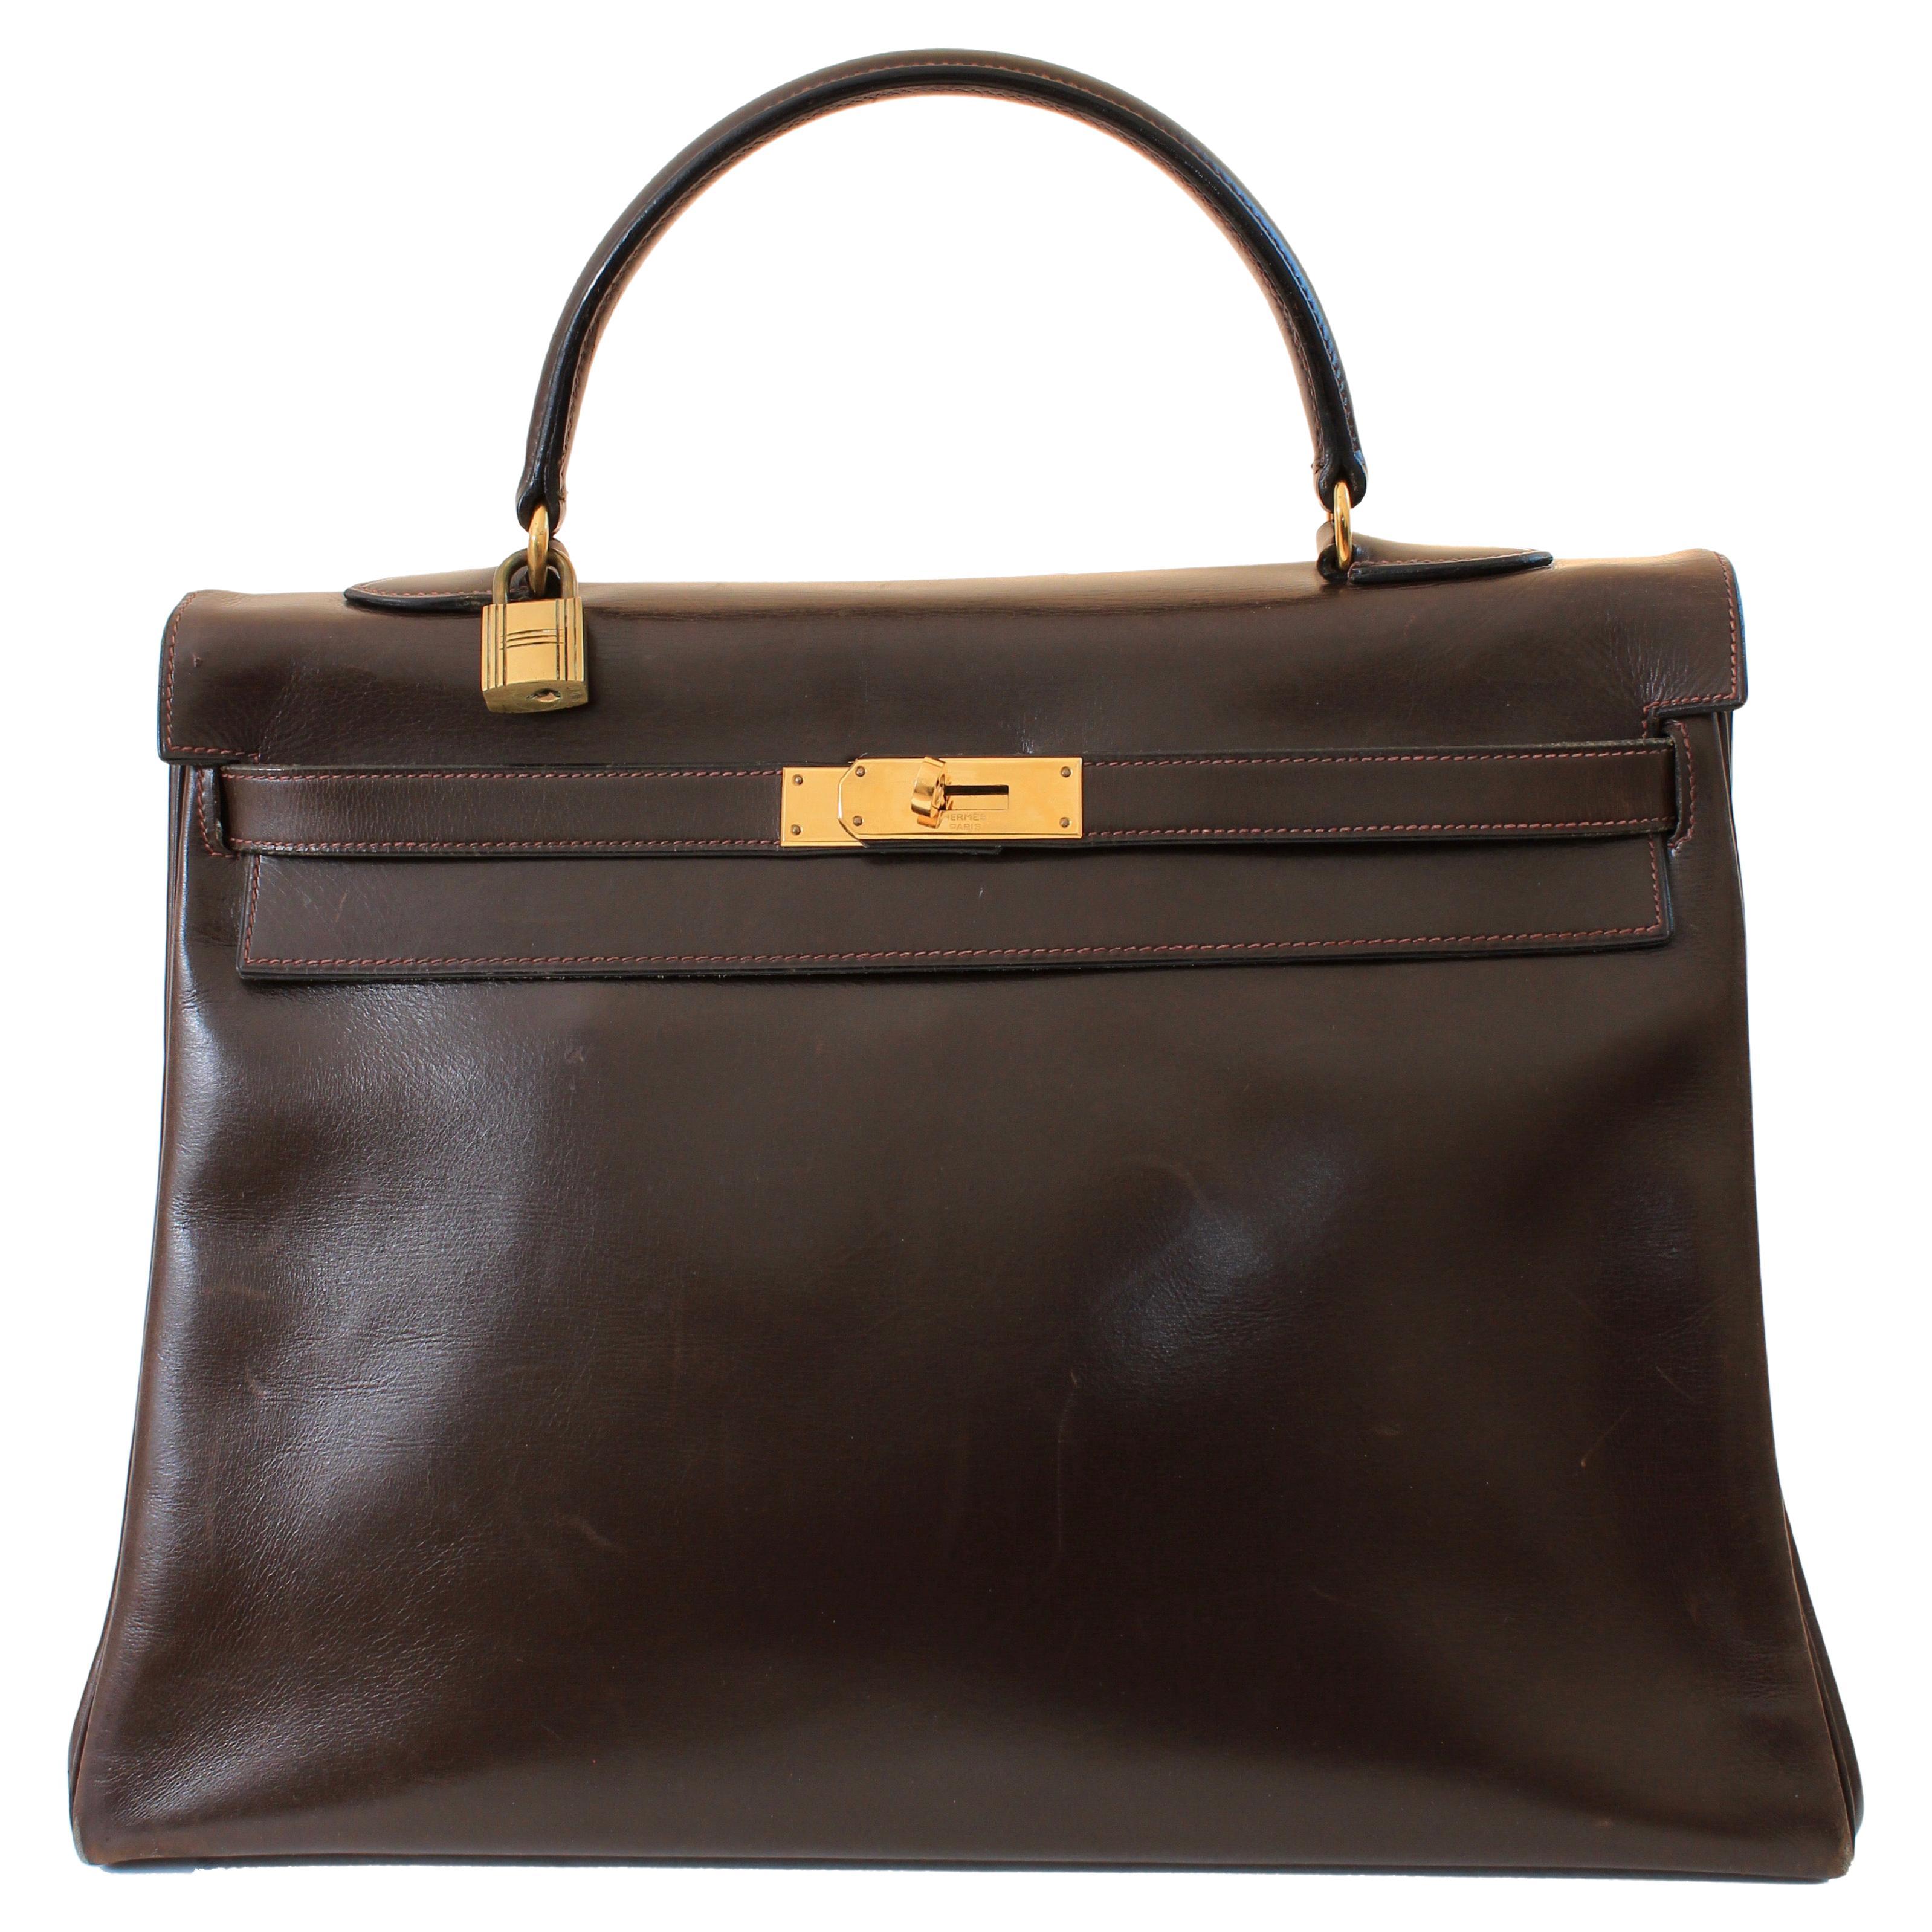 Vintage Hermes Kelly Bag Retourne Brown Box Leather 35cm Top Handle Bag 1945  For Sale